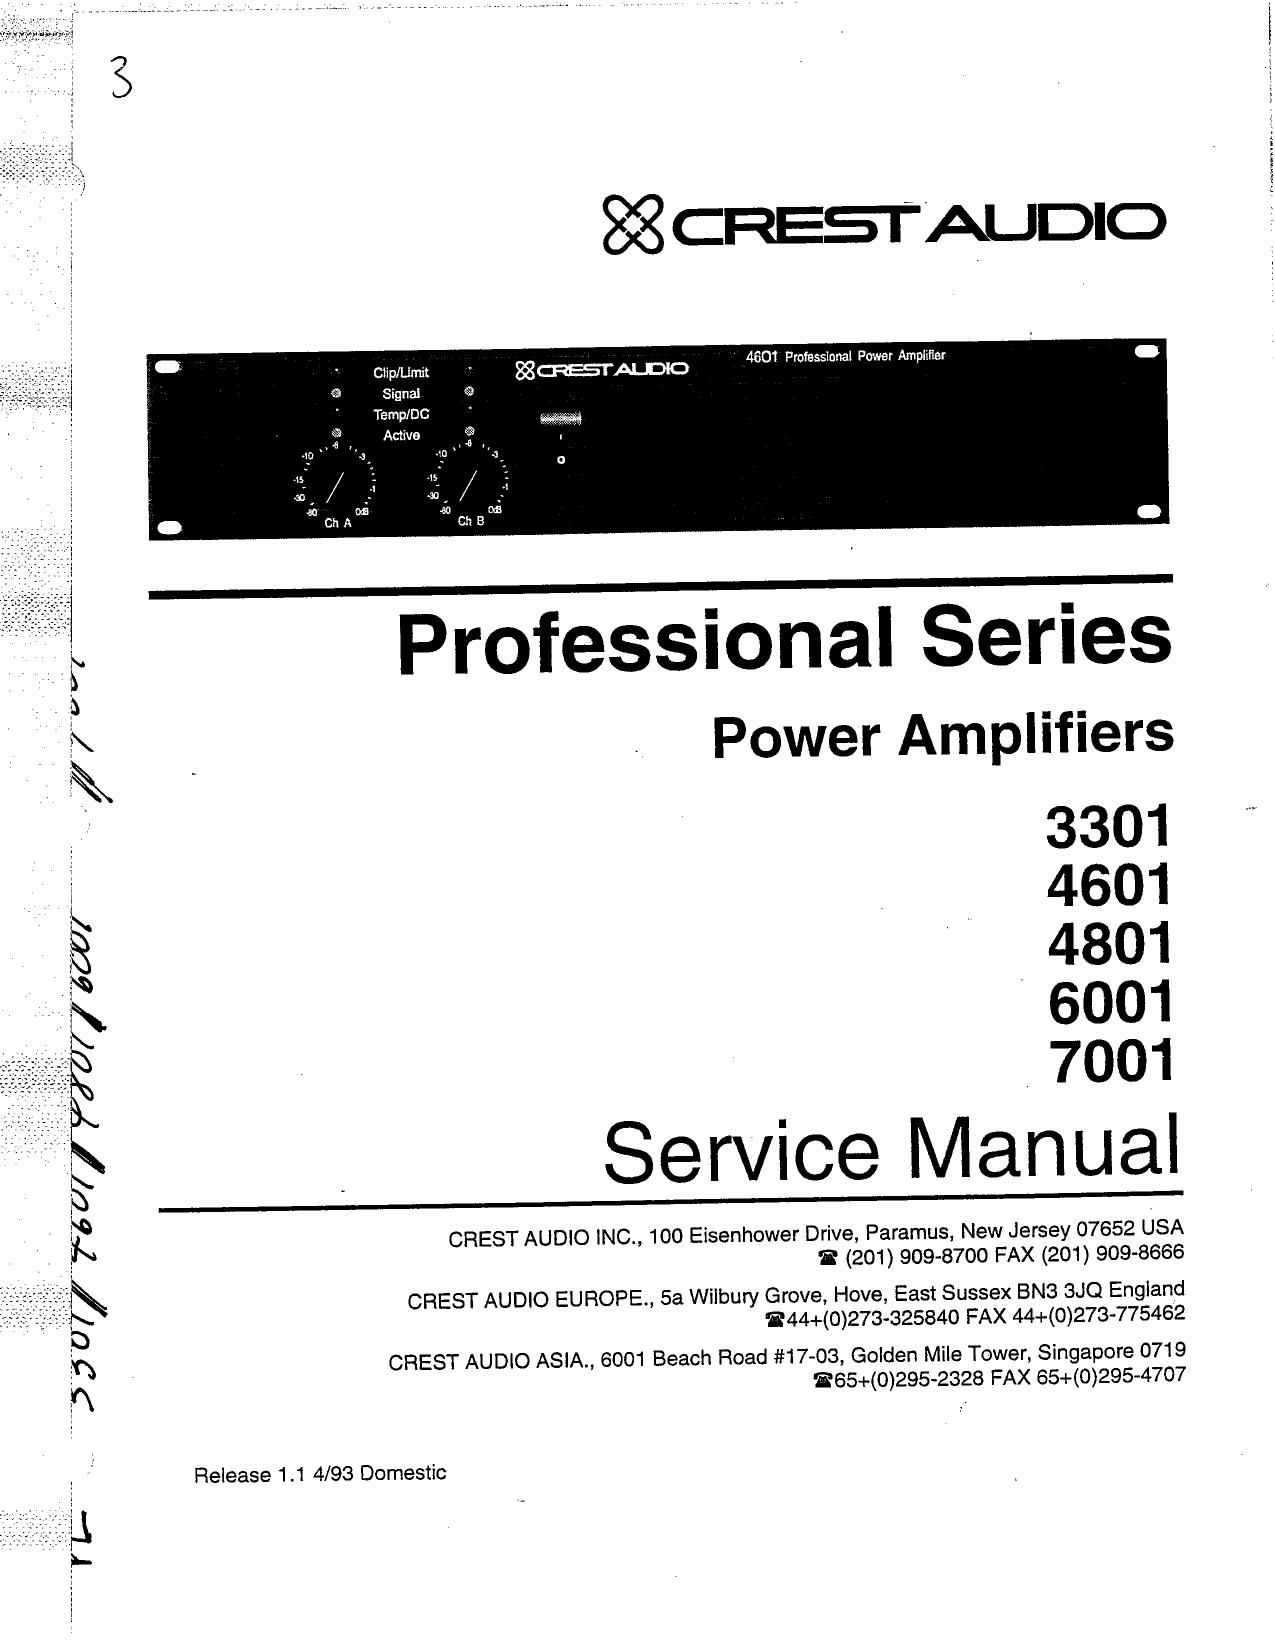 Crest Audio 6001 Service Manual